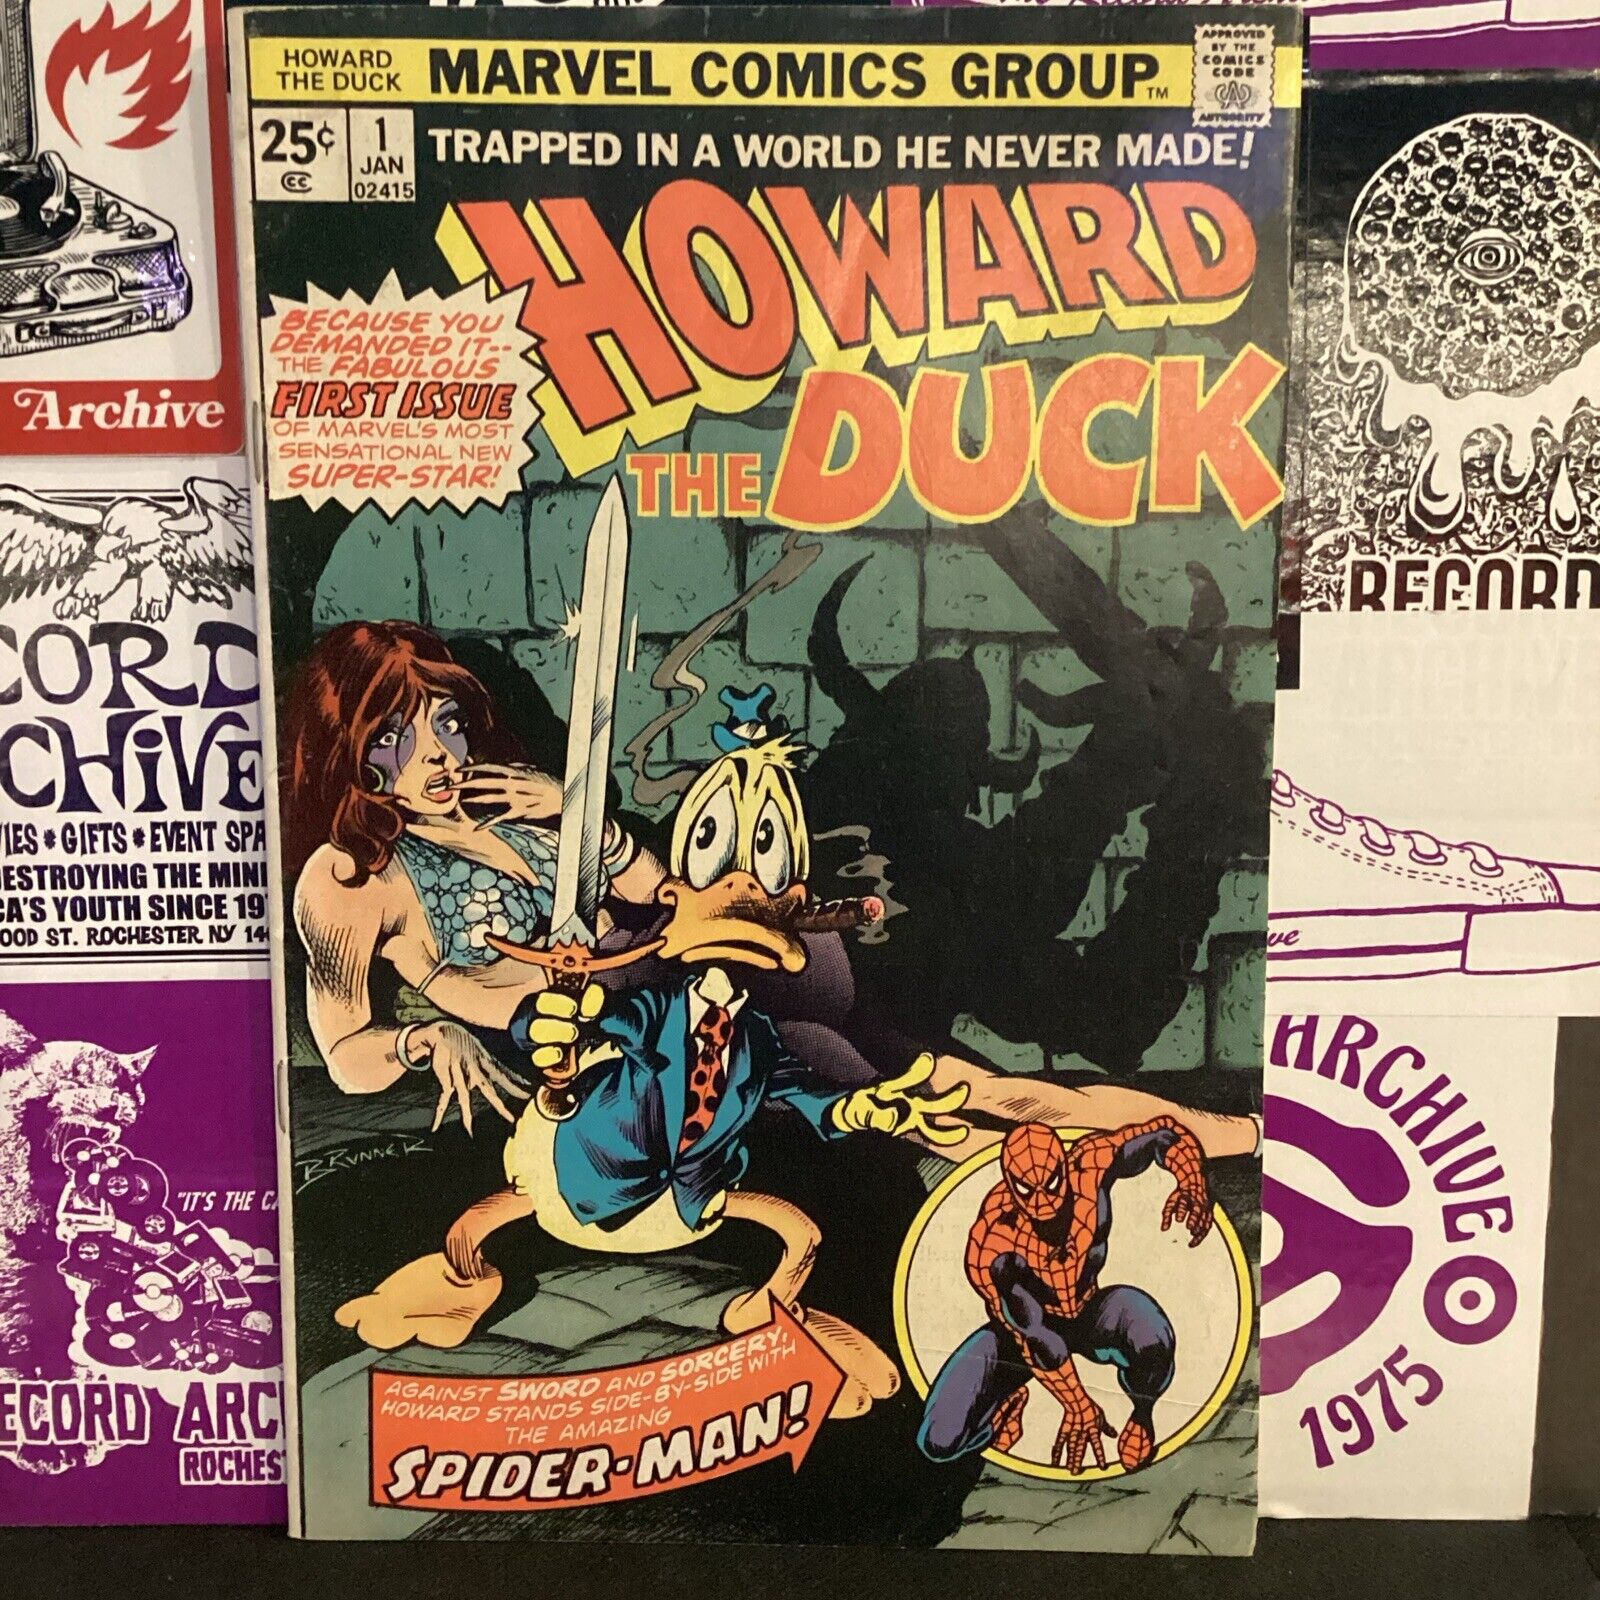 HOWARD THE DUCK # 1 (January 1976)